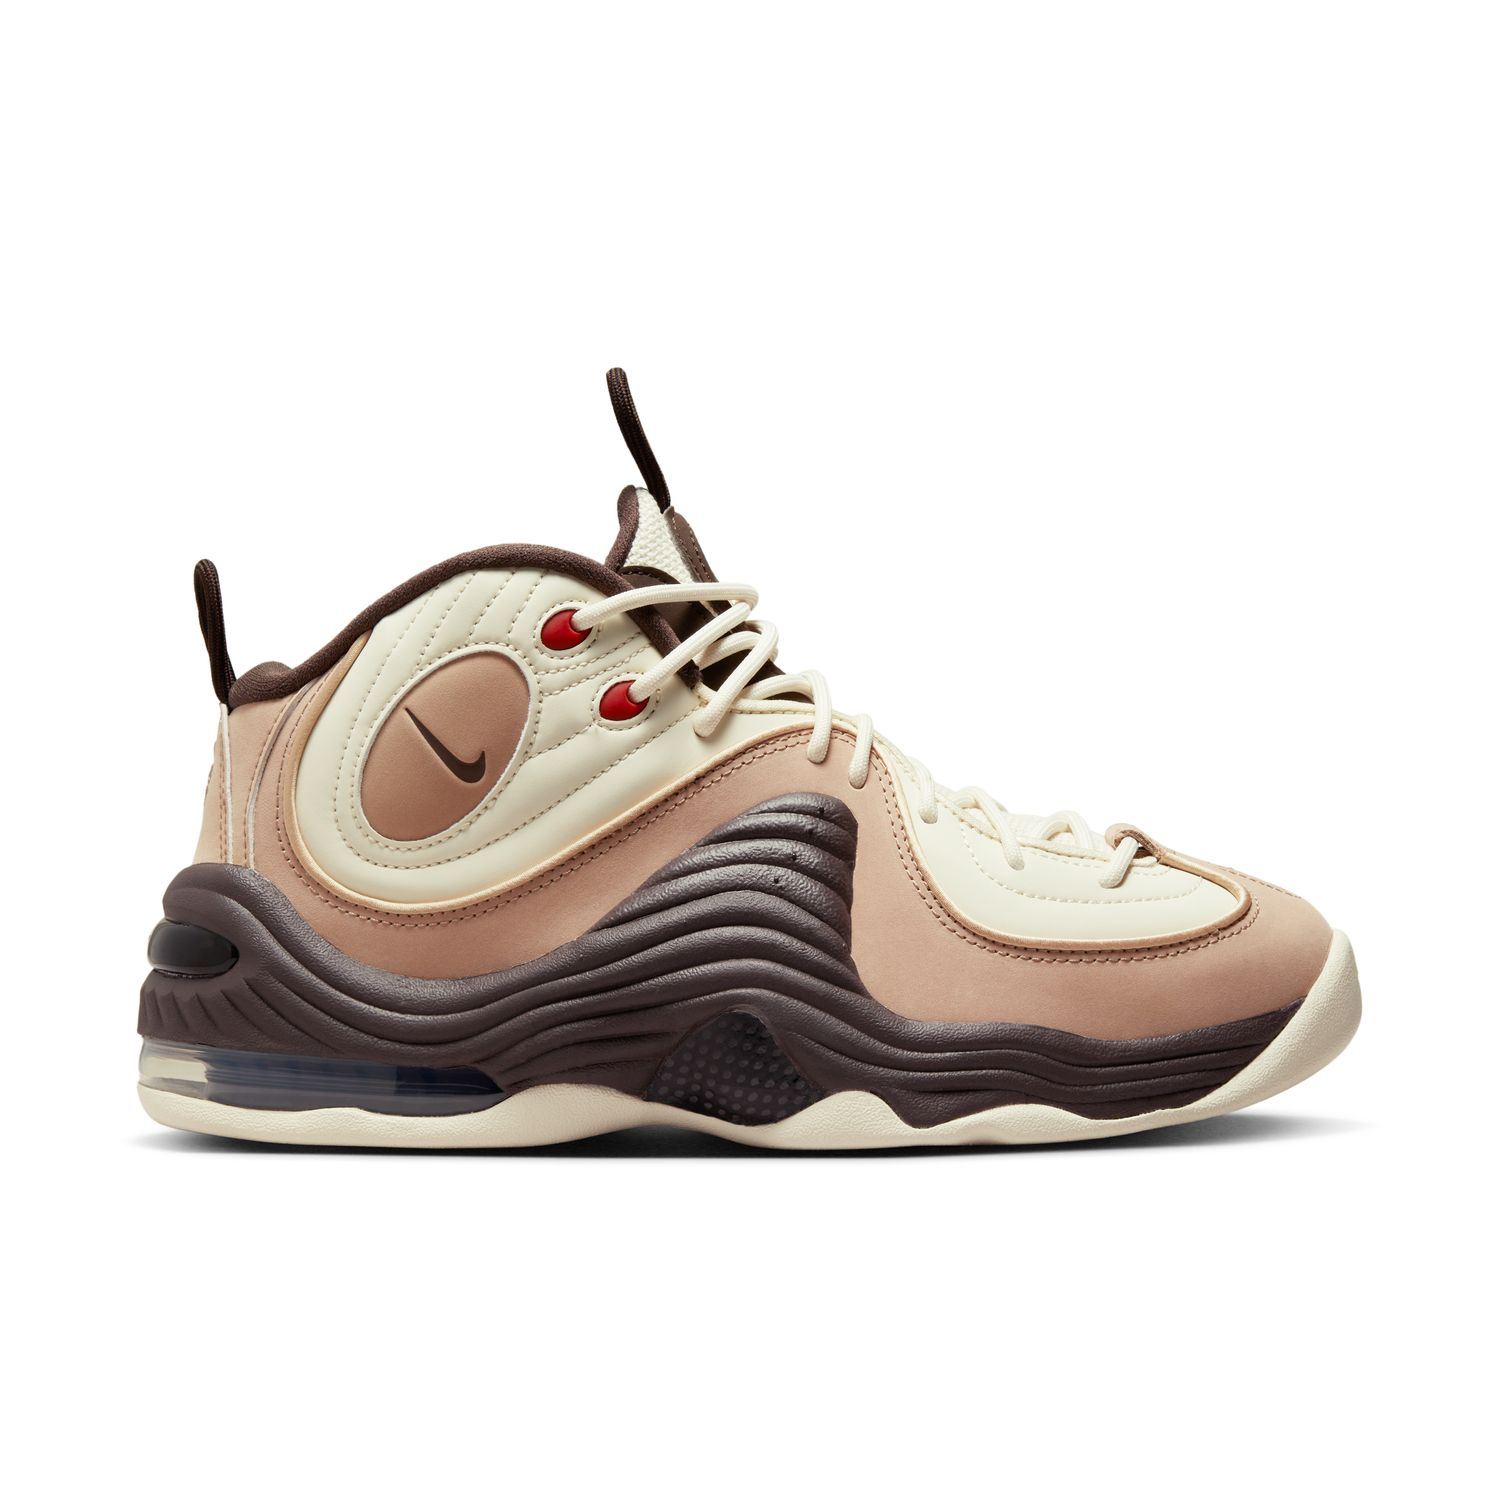 Nike Air Penny 2 "Baroque Brown" - Pánske - Tenisky Nike - Biele - FB8885-100 - Veľkosť: 49.5